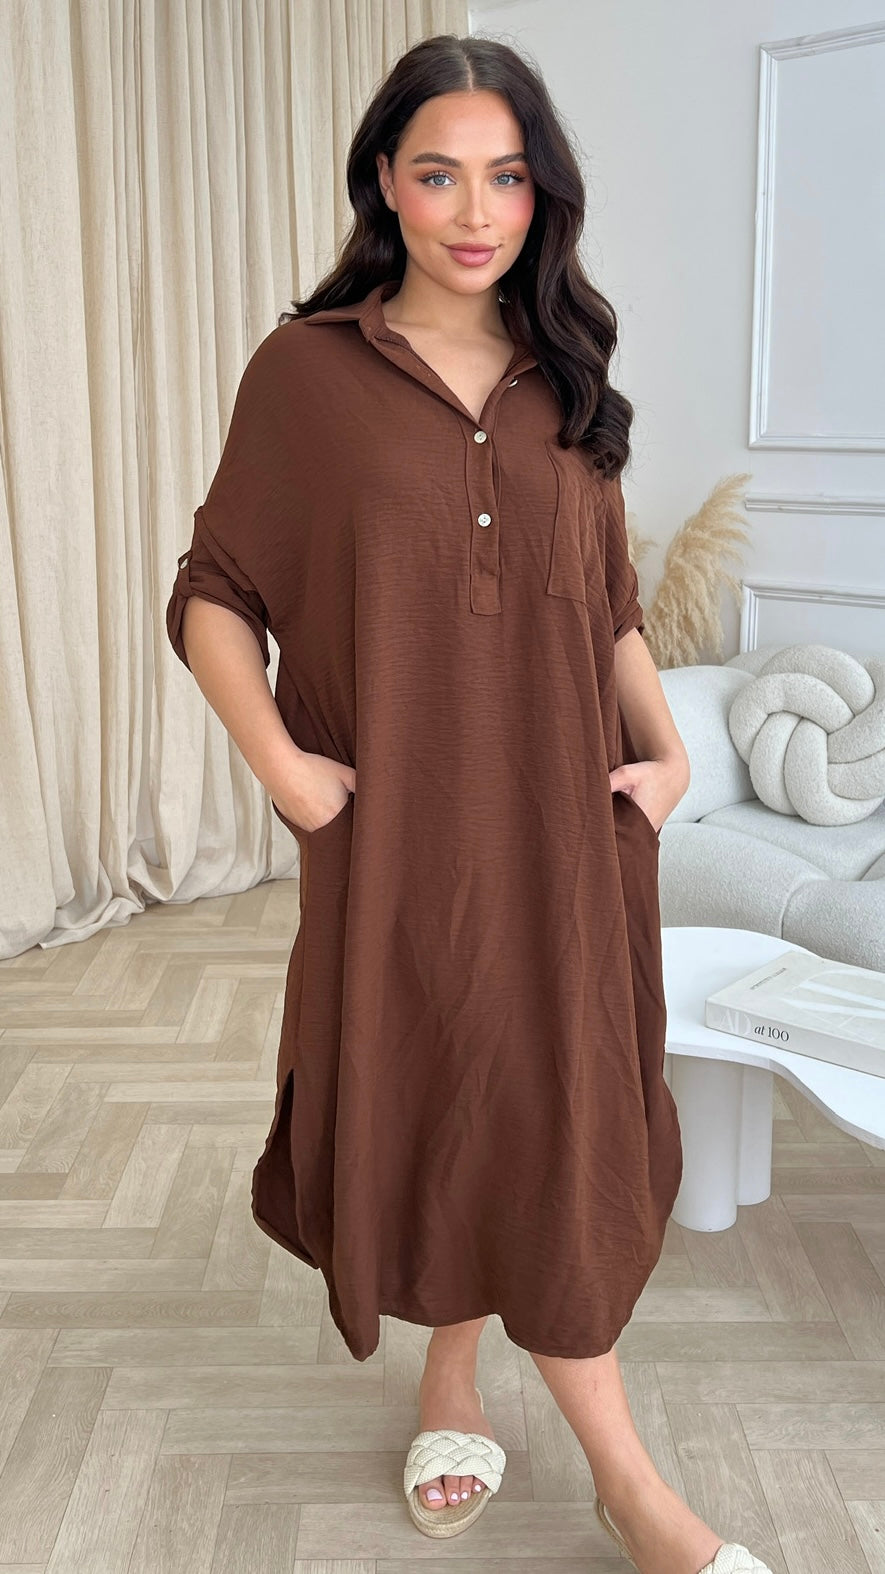 SaseSarah dress size 8-22